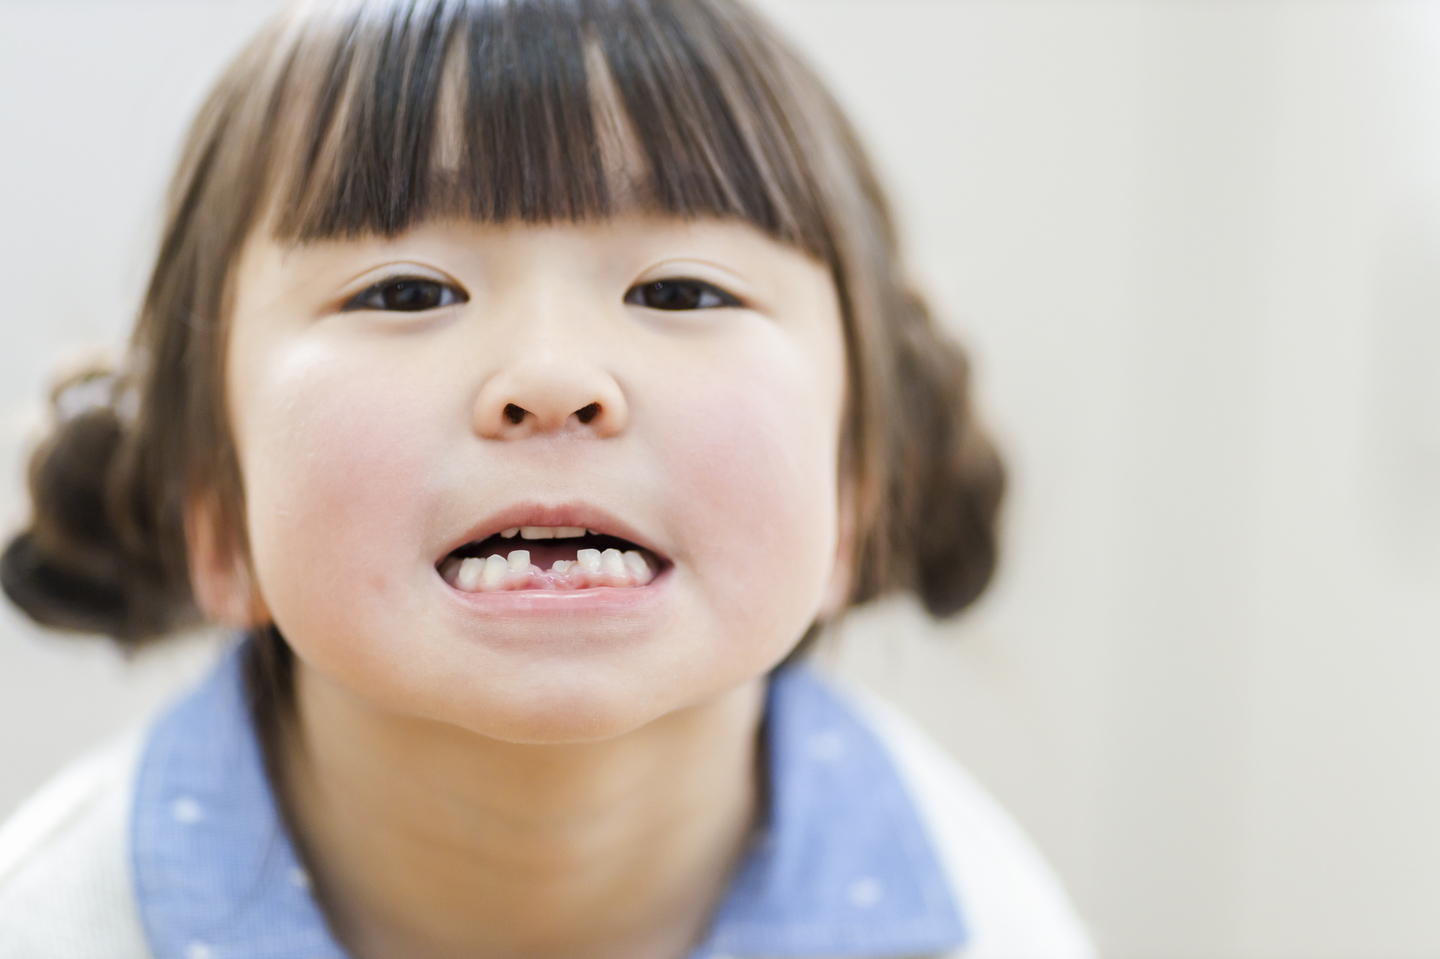 乳歯 子ども 子供 受け口 反対咬合 矯正 いつから マウスピース ムーシールド プレオルソ チンキャップ おすすめ 人気 安い 広島 矯正歯科